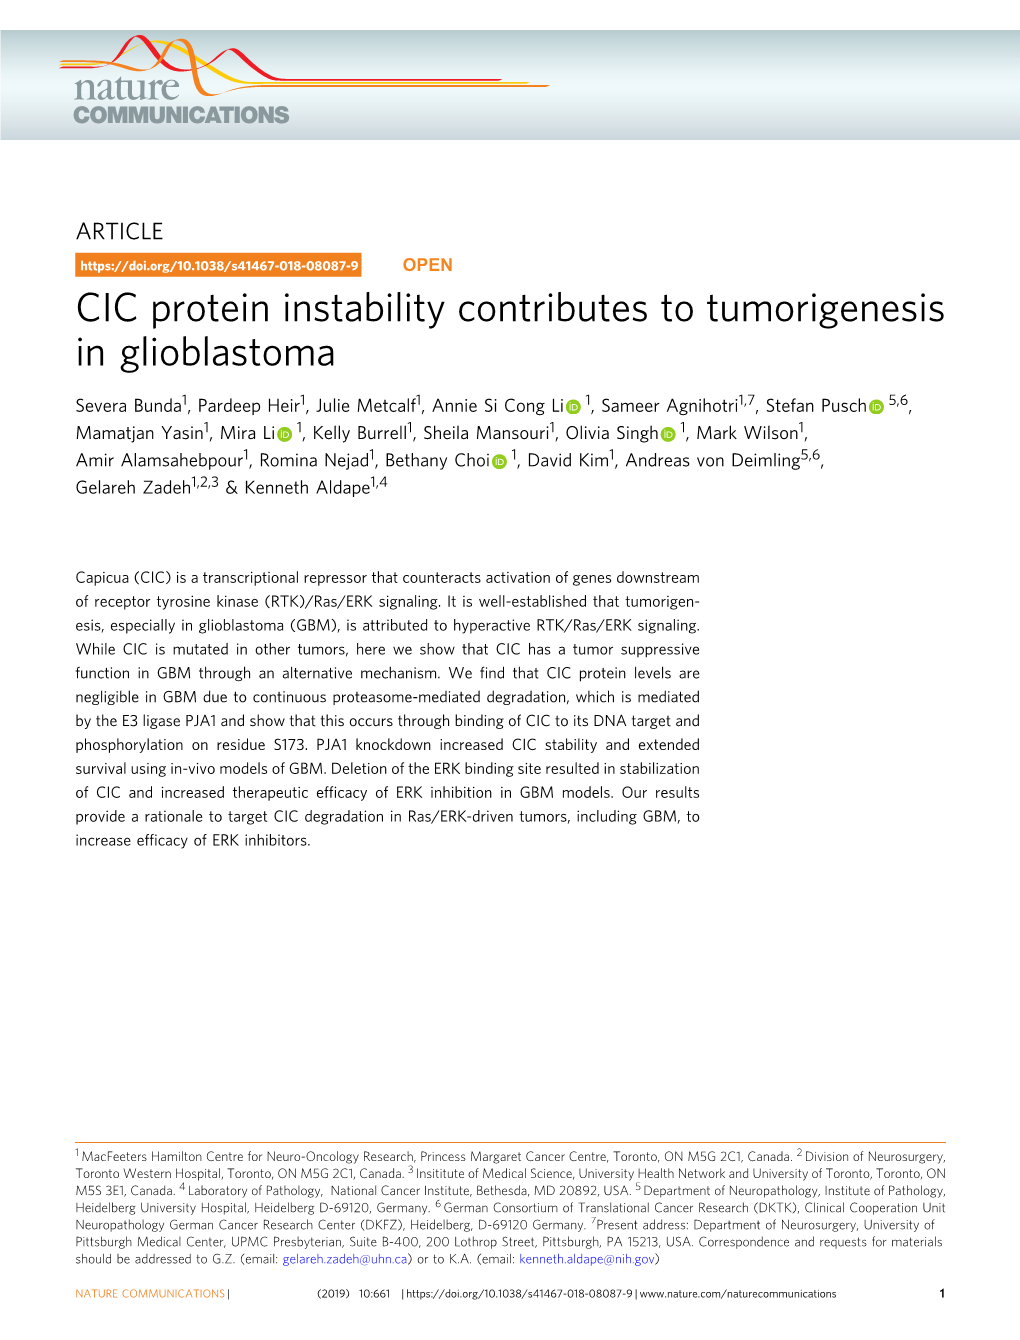 CIC Protein Instability Contributes to Tumorigenesis in Glioblastoma